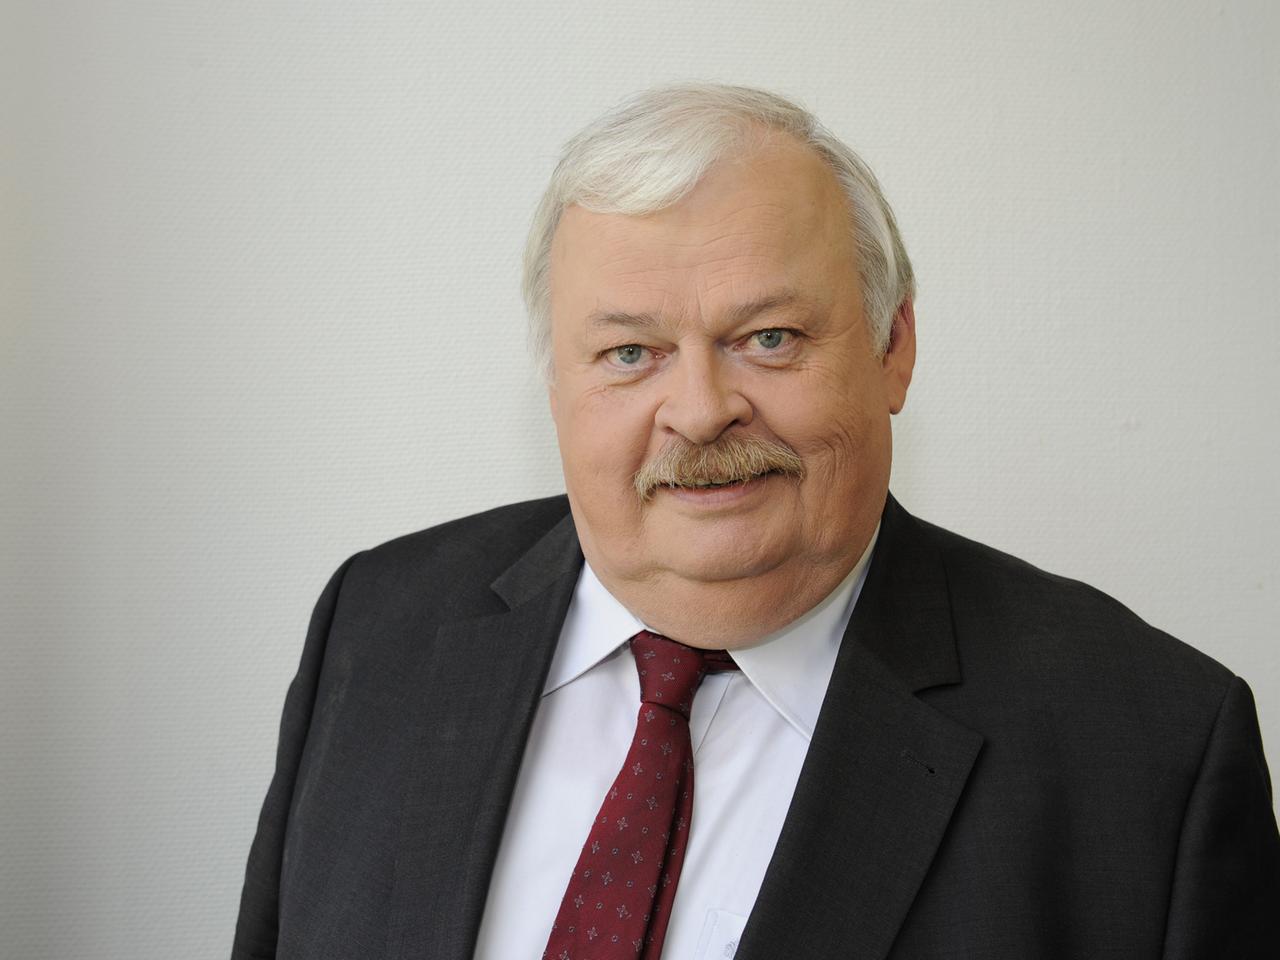 Der SPD-Politiker Guntram Schneider, Minister für Arbeit, Integration und Soziales in der Landesregierung von Nordrhein-Westfalen, aufgenommen am 02.06.2013 in Köln.